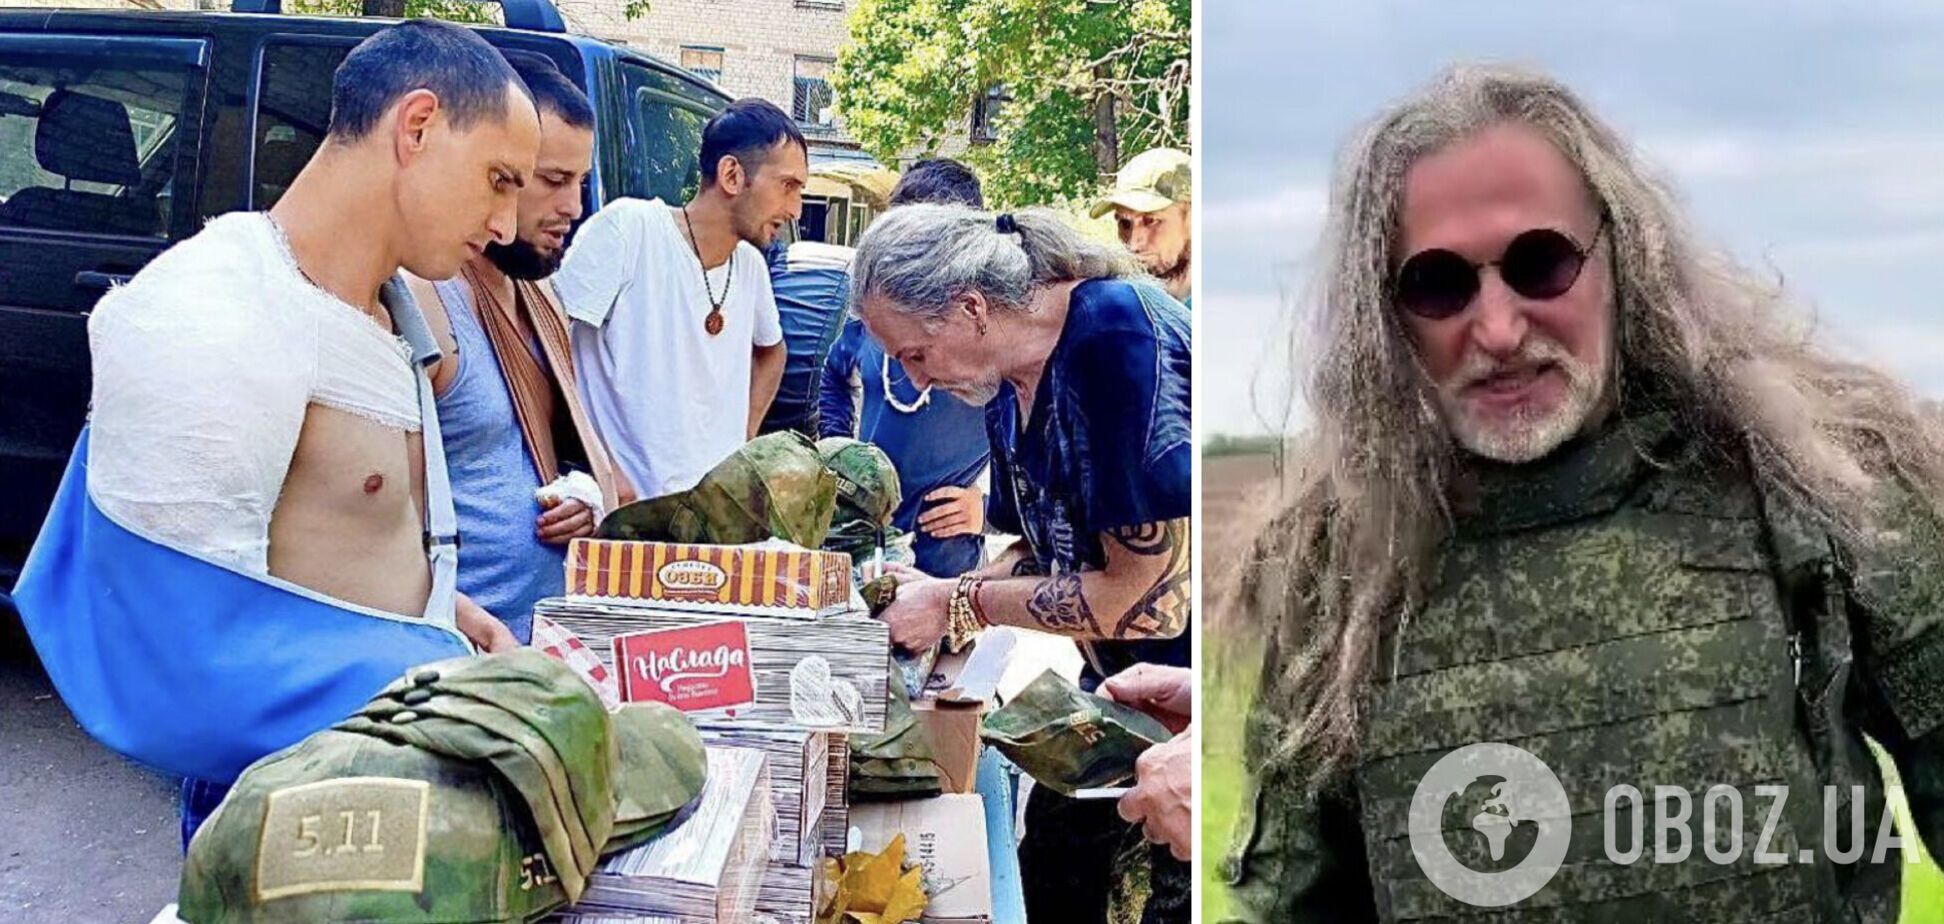 Джигурда выставил себя посмешищем на Донбассе, куда привез оккупантам-калекам лохмотья. Фото